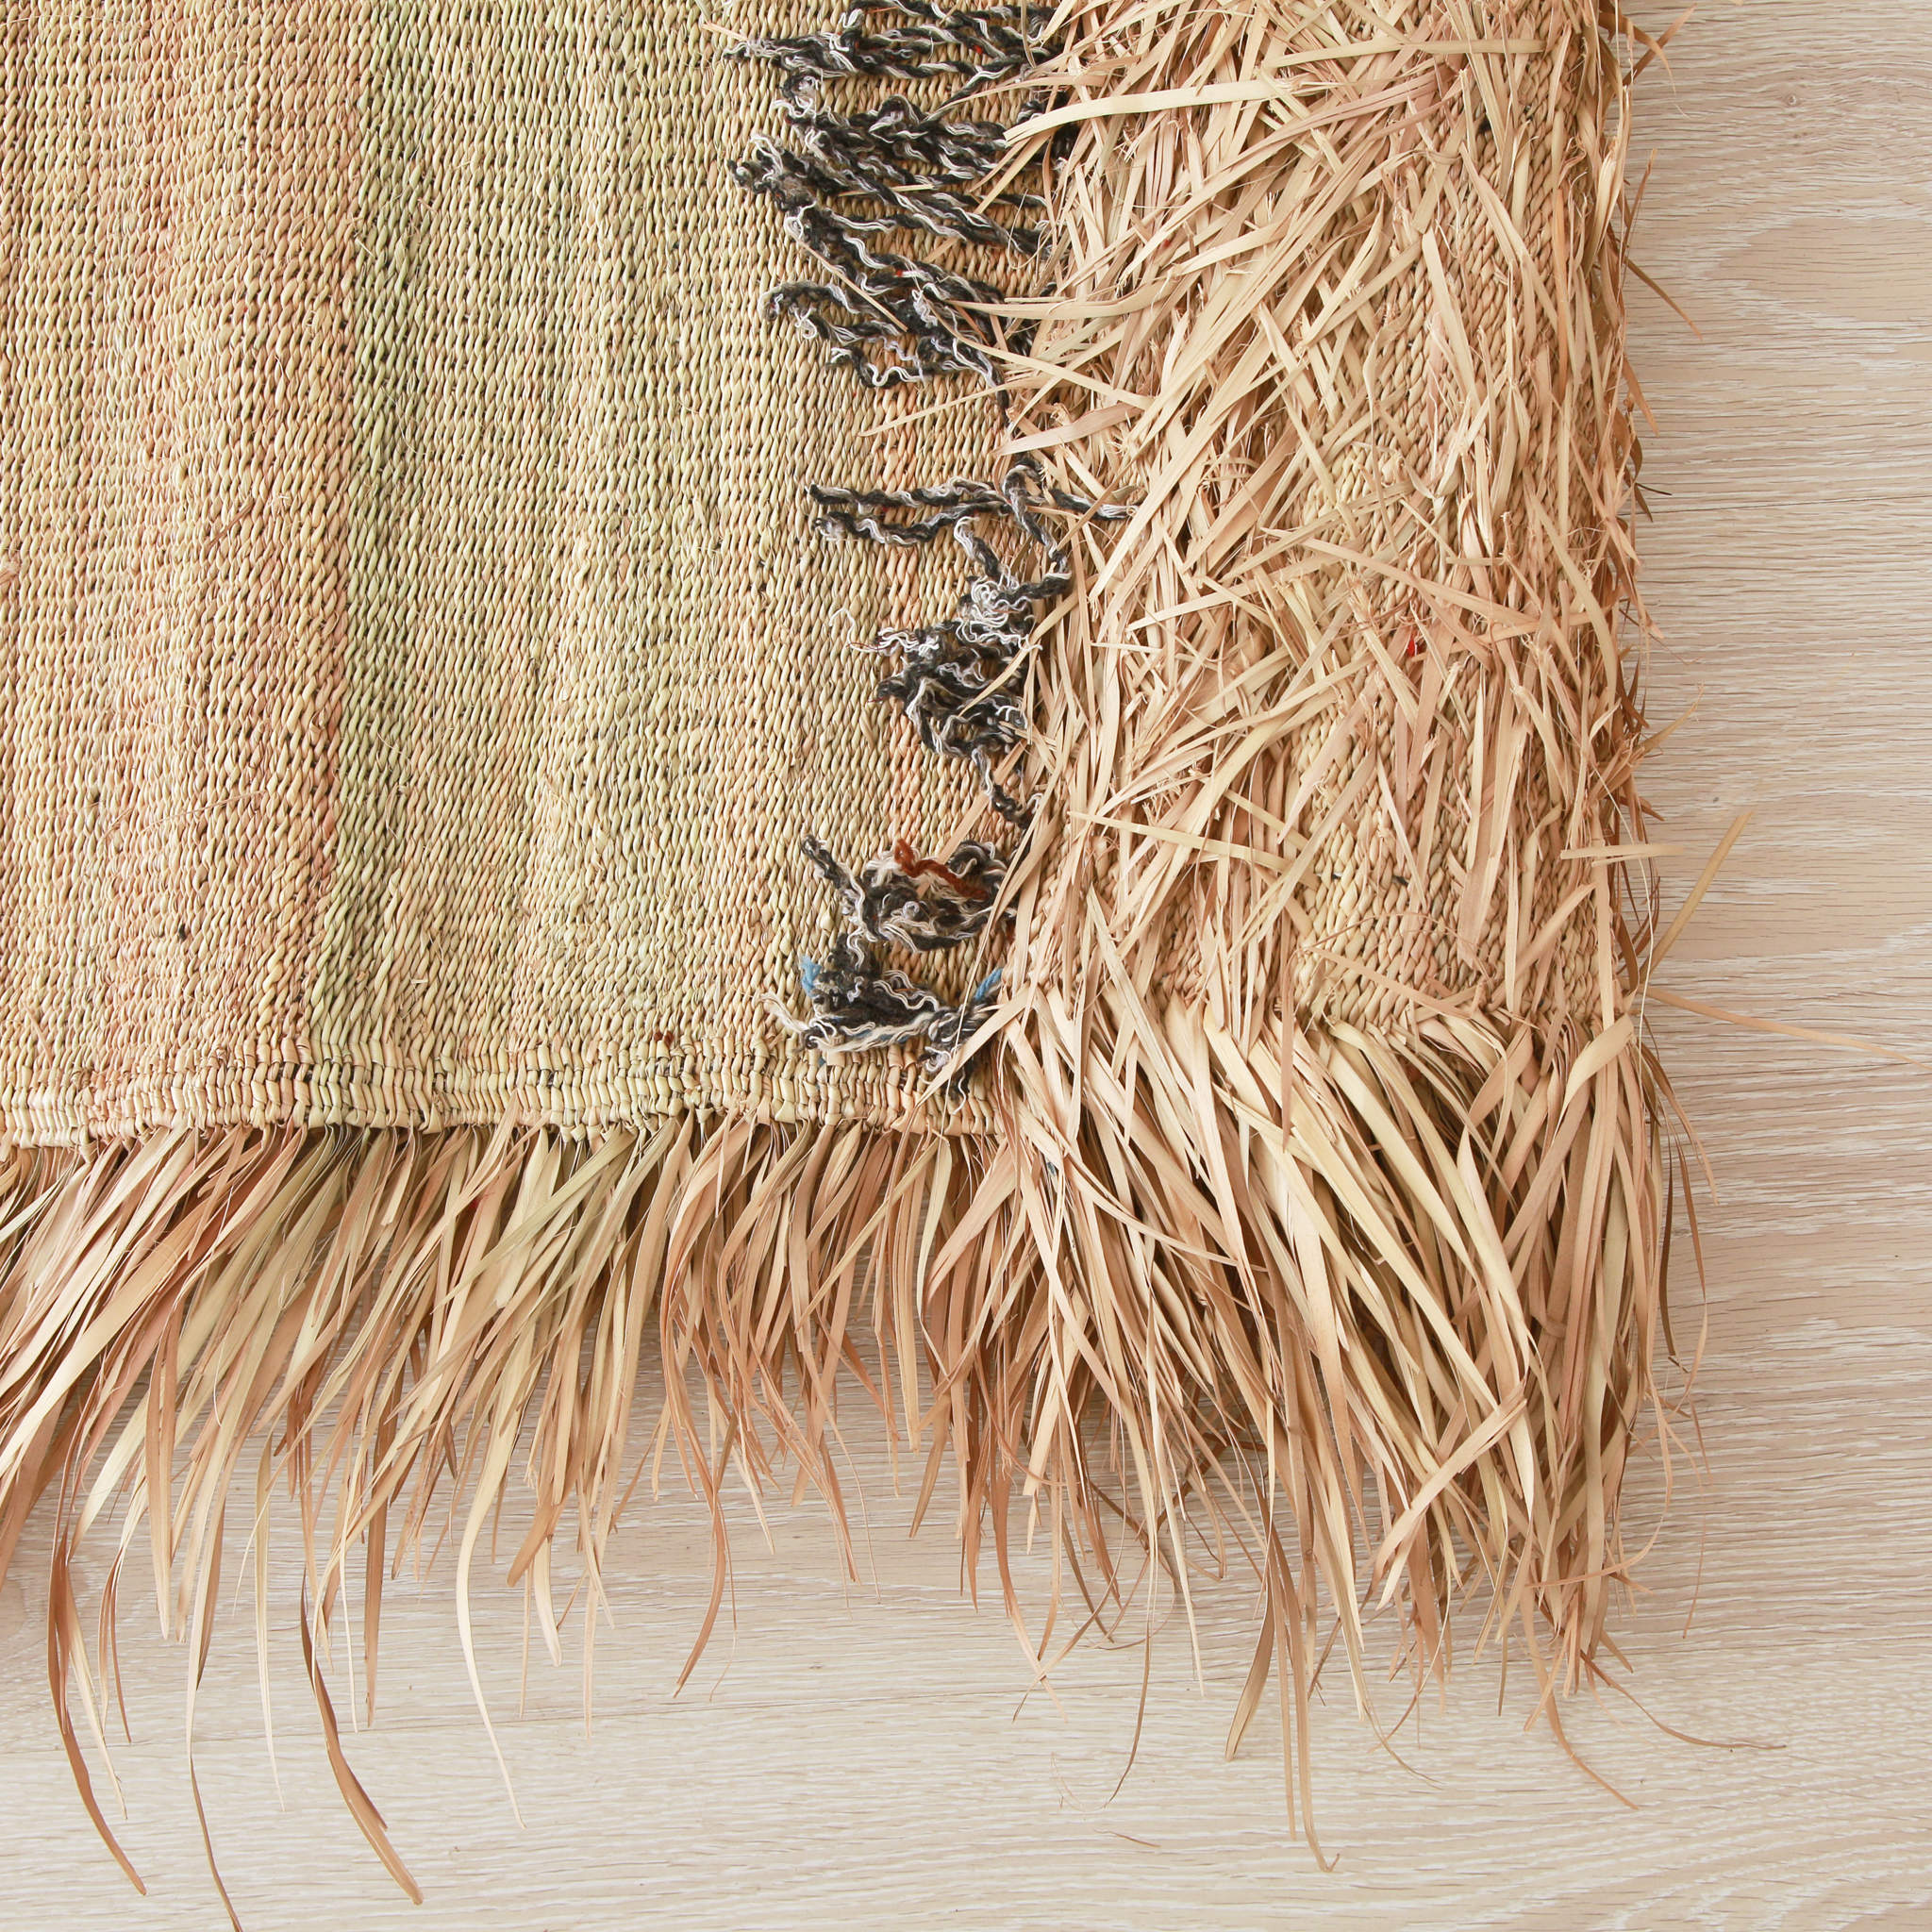 tappeto stuoia hassira senza ricami intrecciata con paglia di palma con un frangia laterale in paglia, dettaglio dell'angolo ripiegato